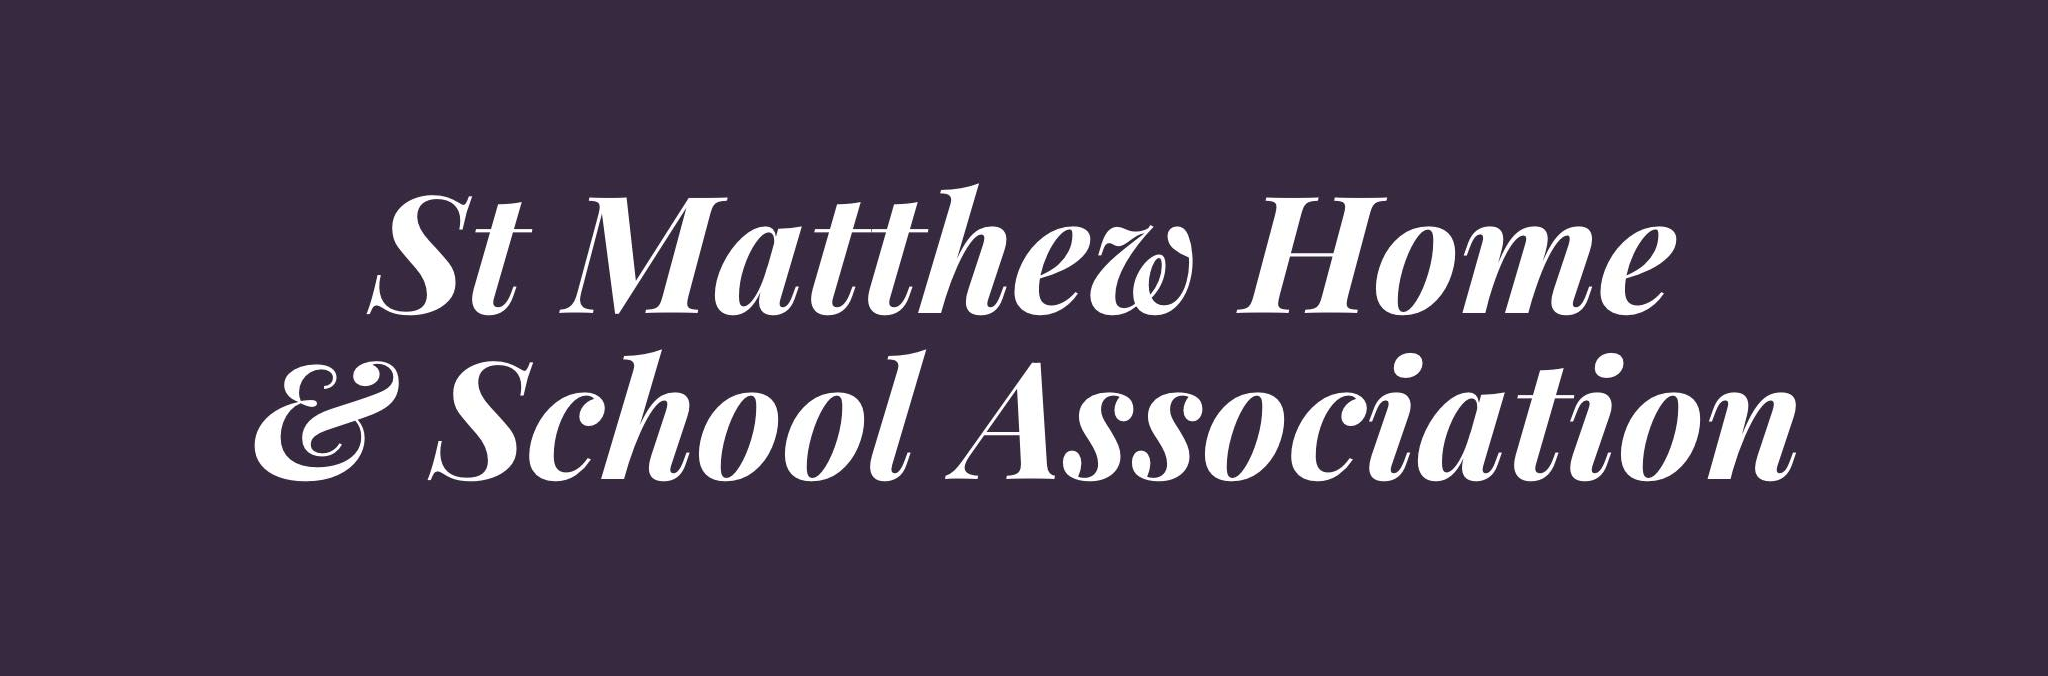 ST MATTHEW HOME AND SCHOOL ASSOCIATION